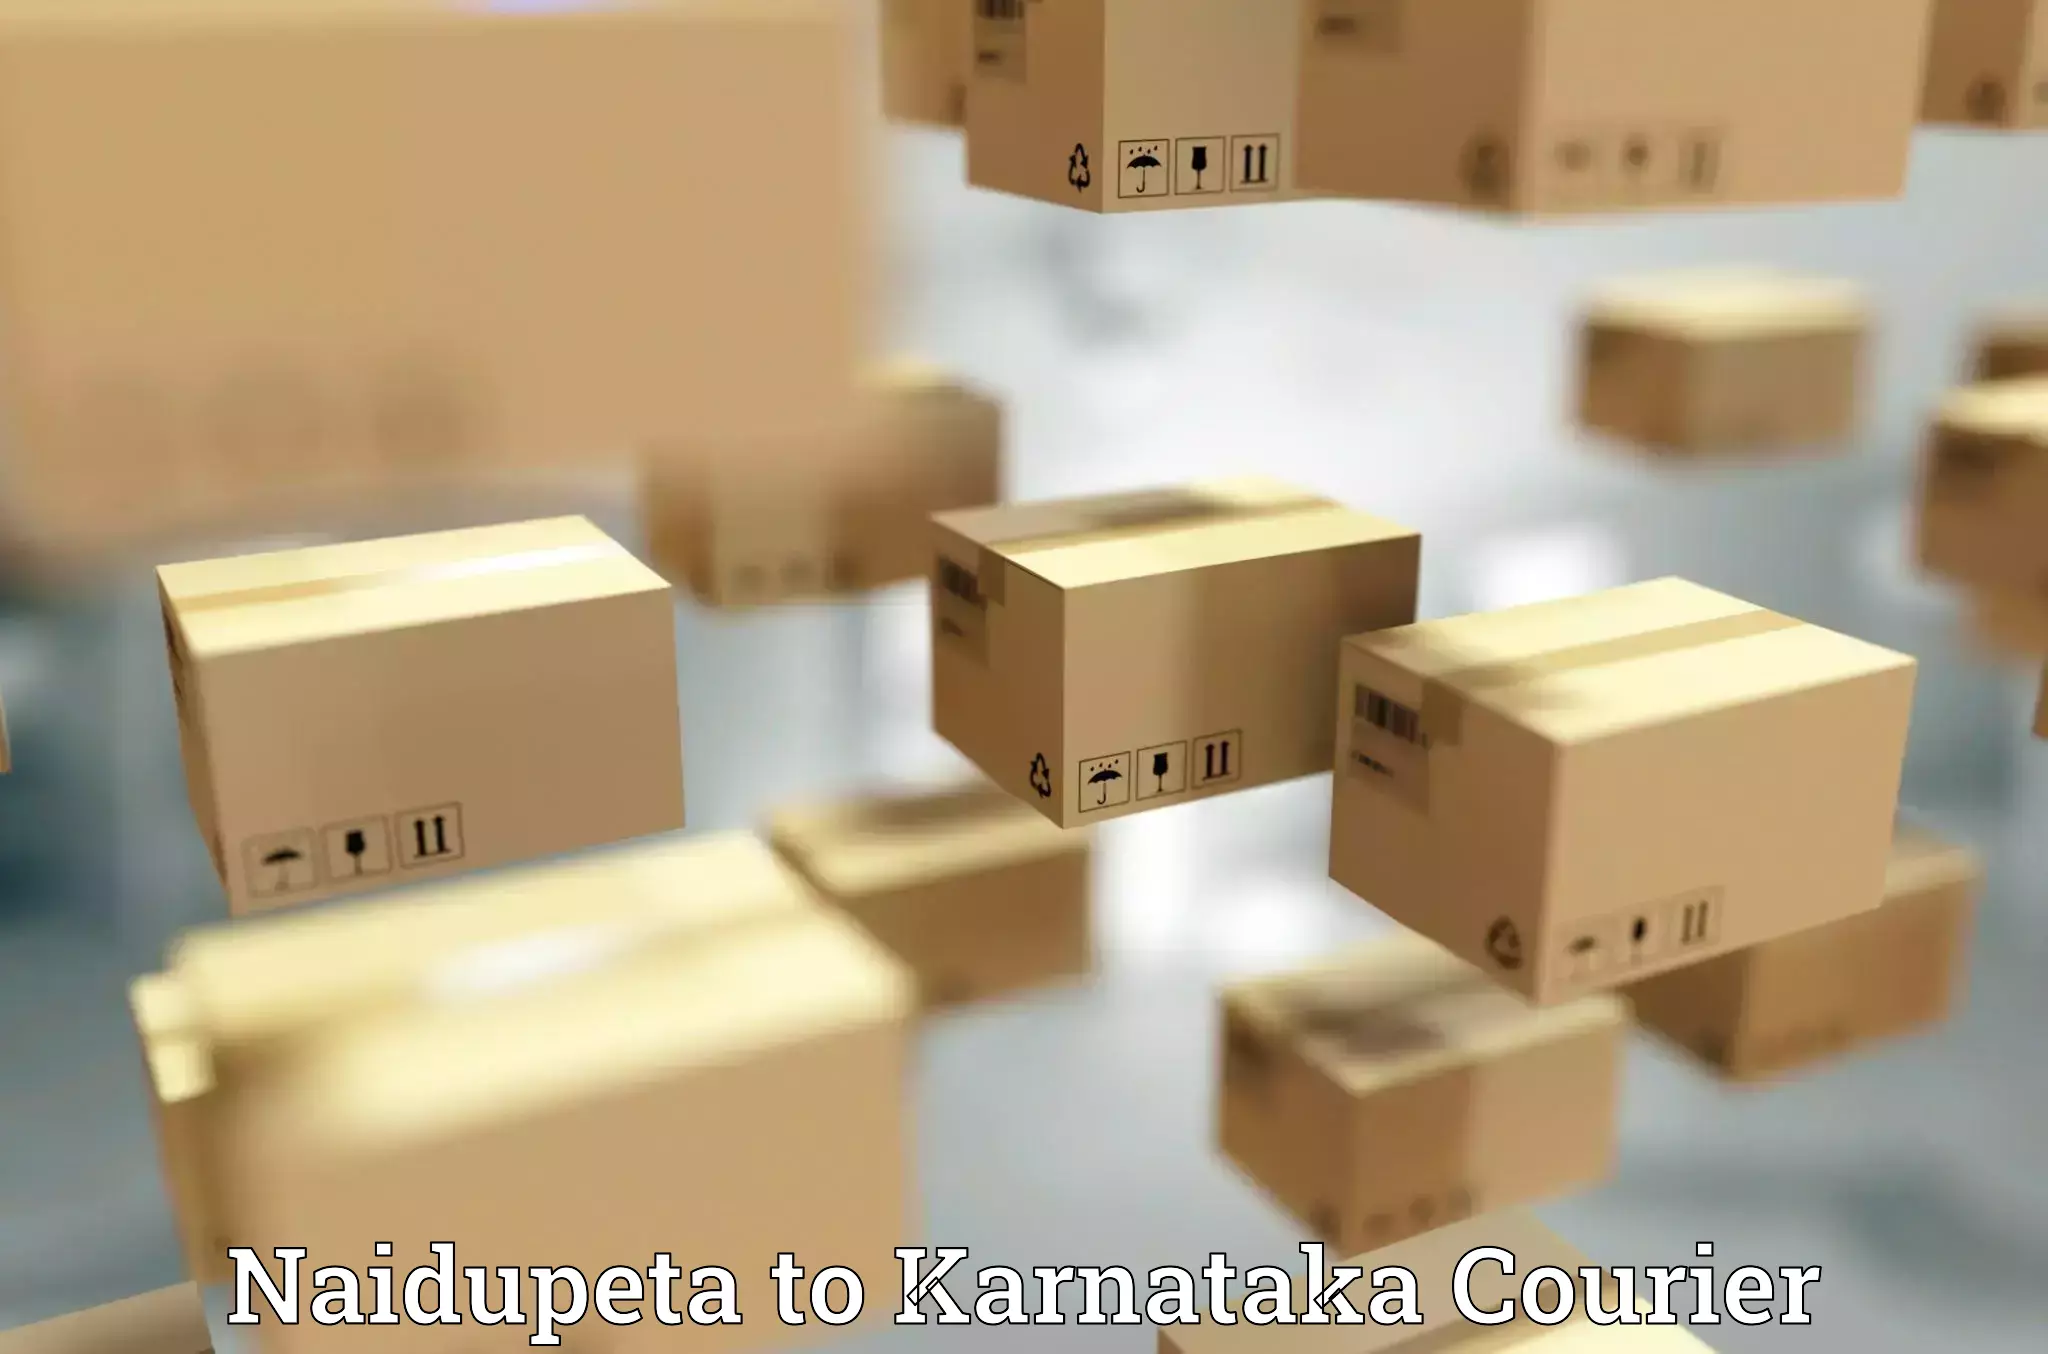 Tracking updates Naidupeta to Karnataka